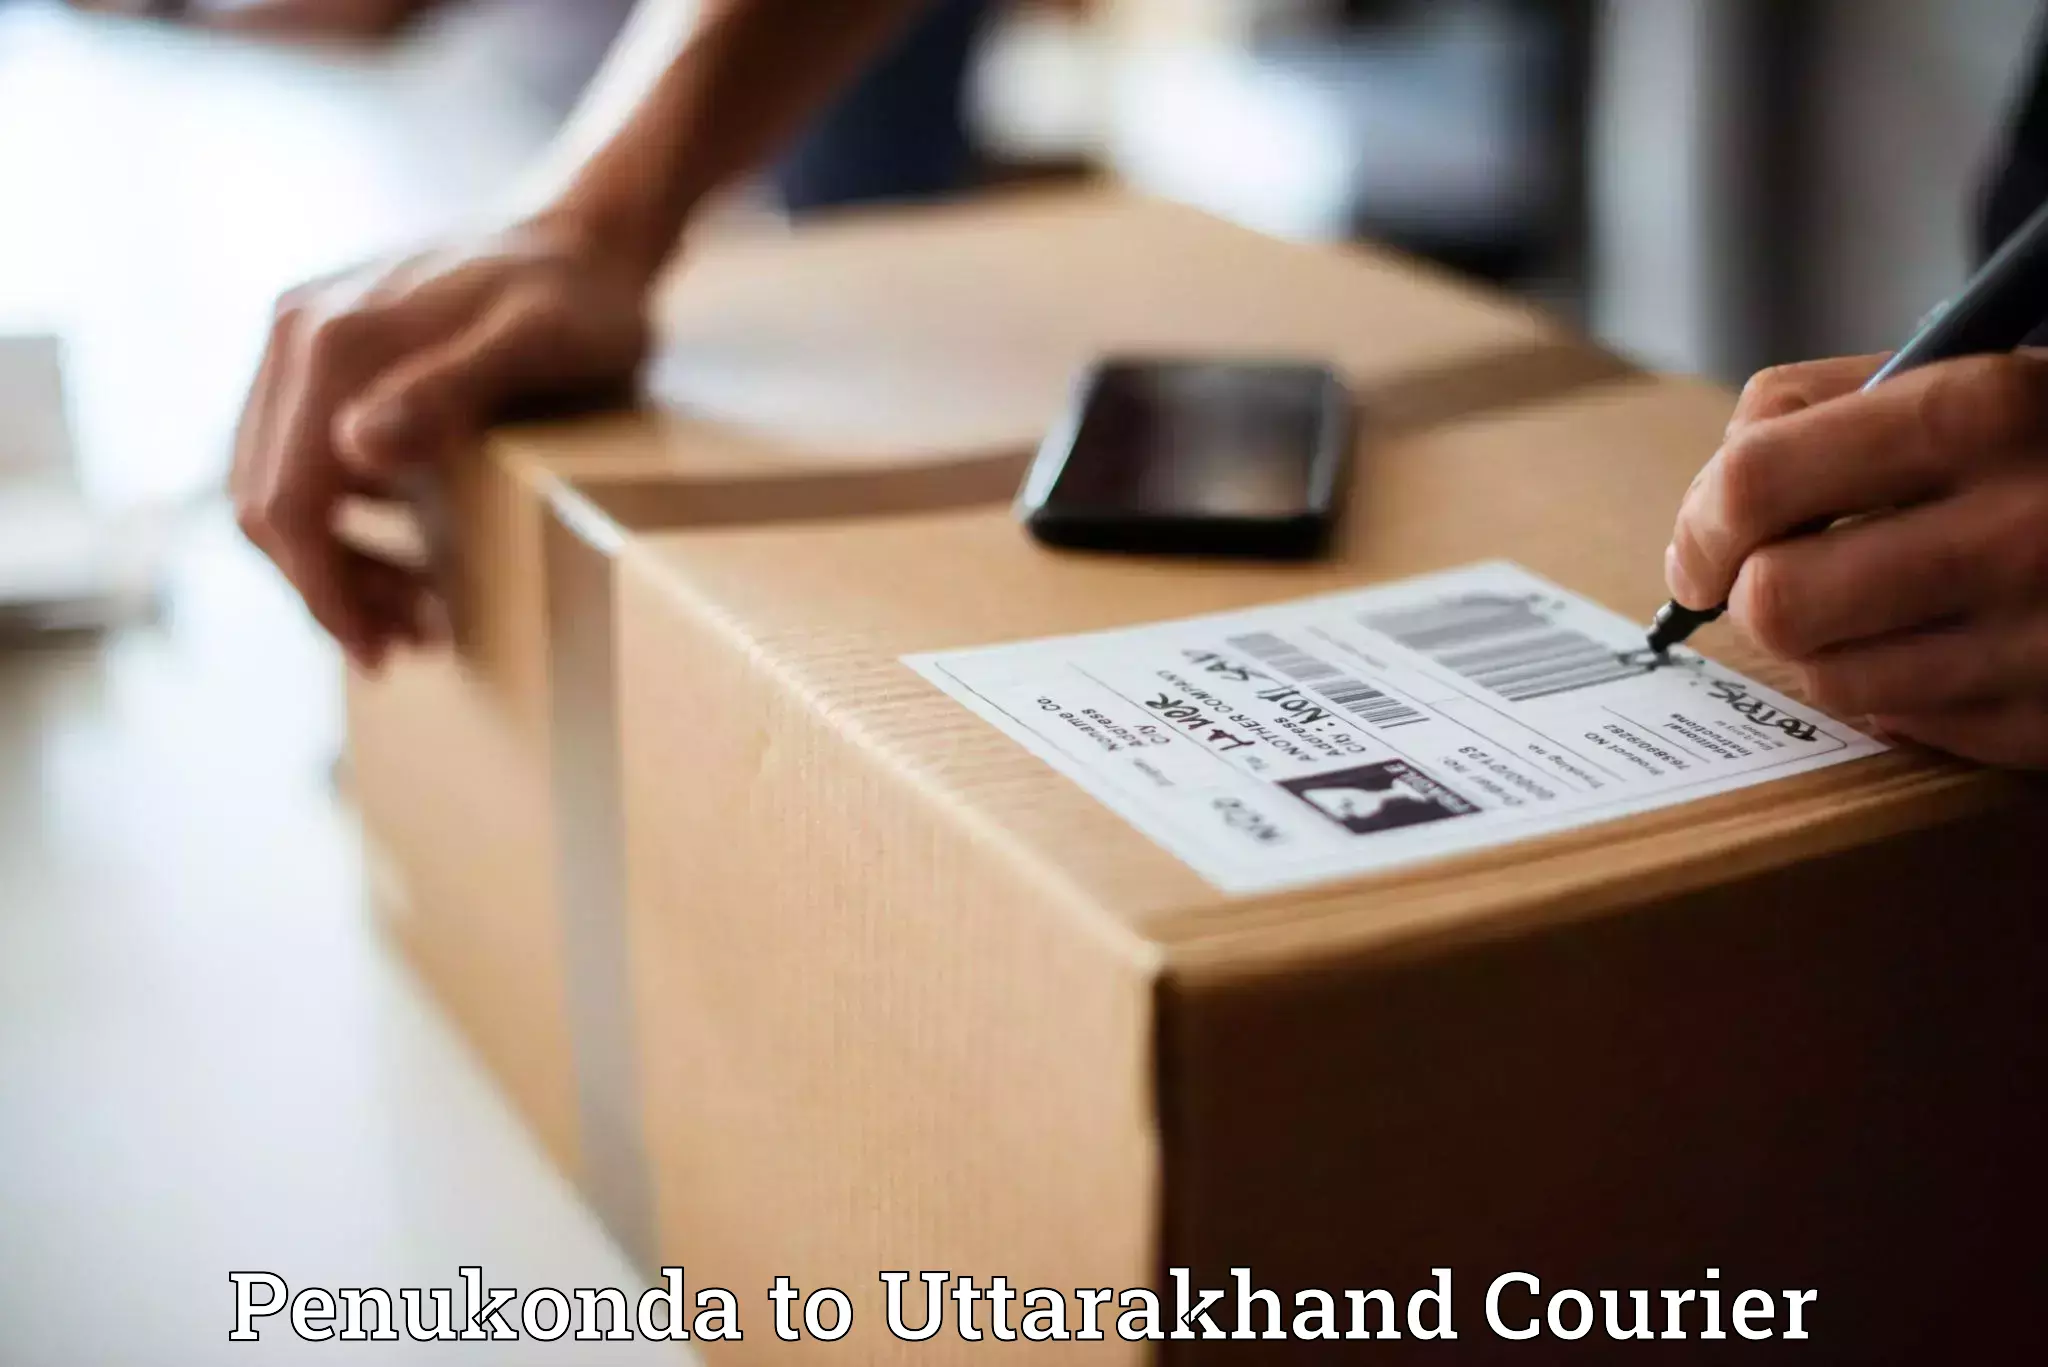 Secure package delivery Penukonda to IIT Roorkee